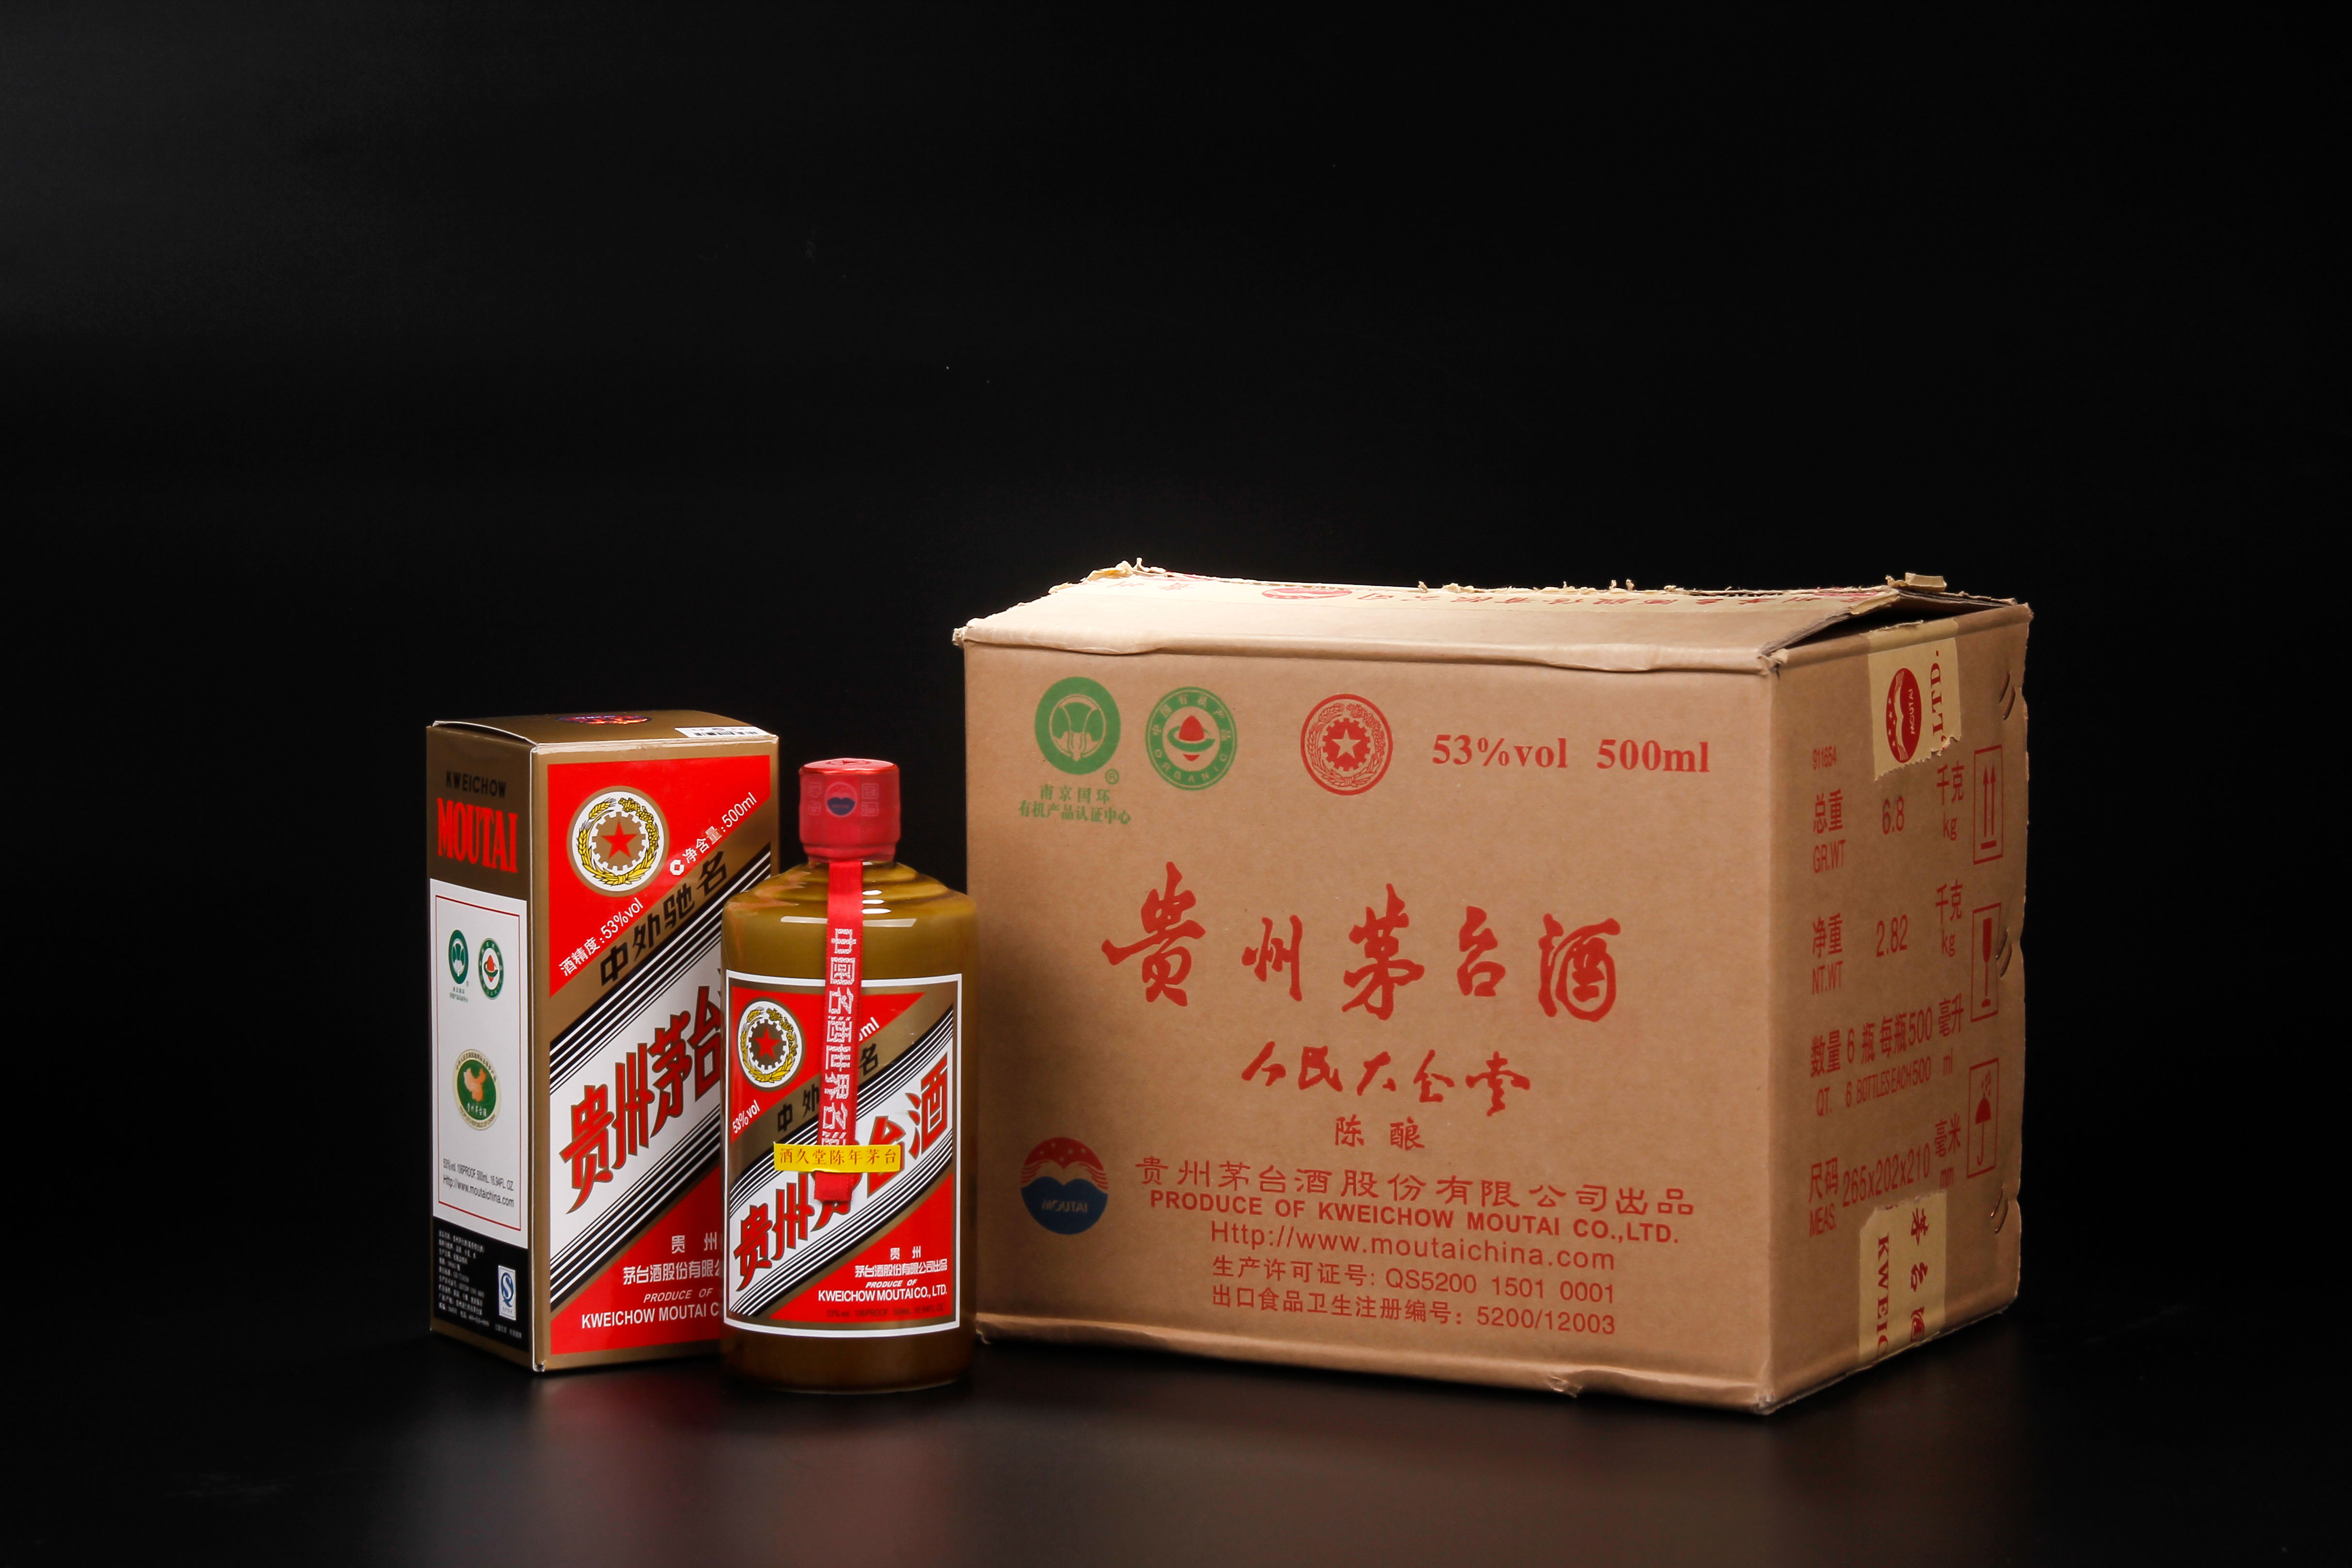 珍贵酱瓶 2016年人民大会堂陈酿茅台酒(原箱)70年代初 绝版限量 飘带